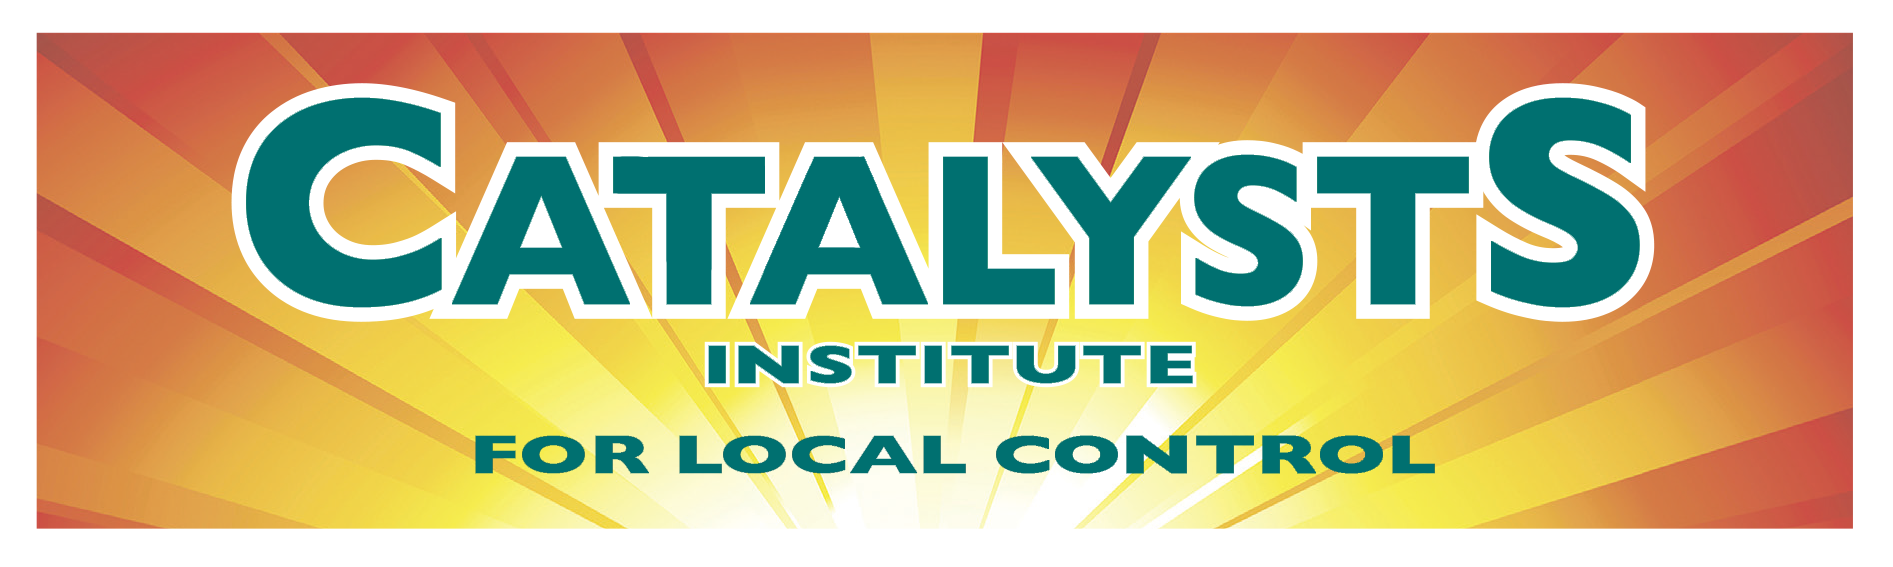 Catalysts Institute for Local Control